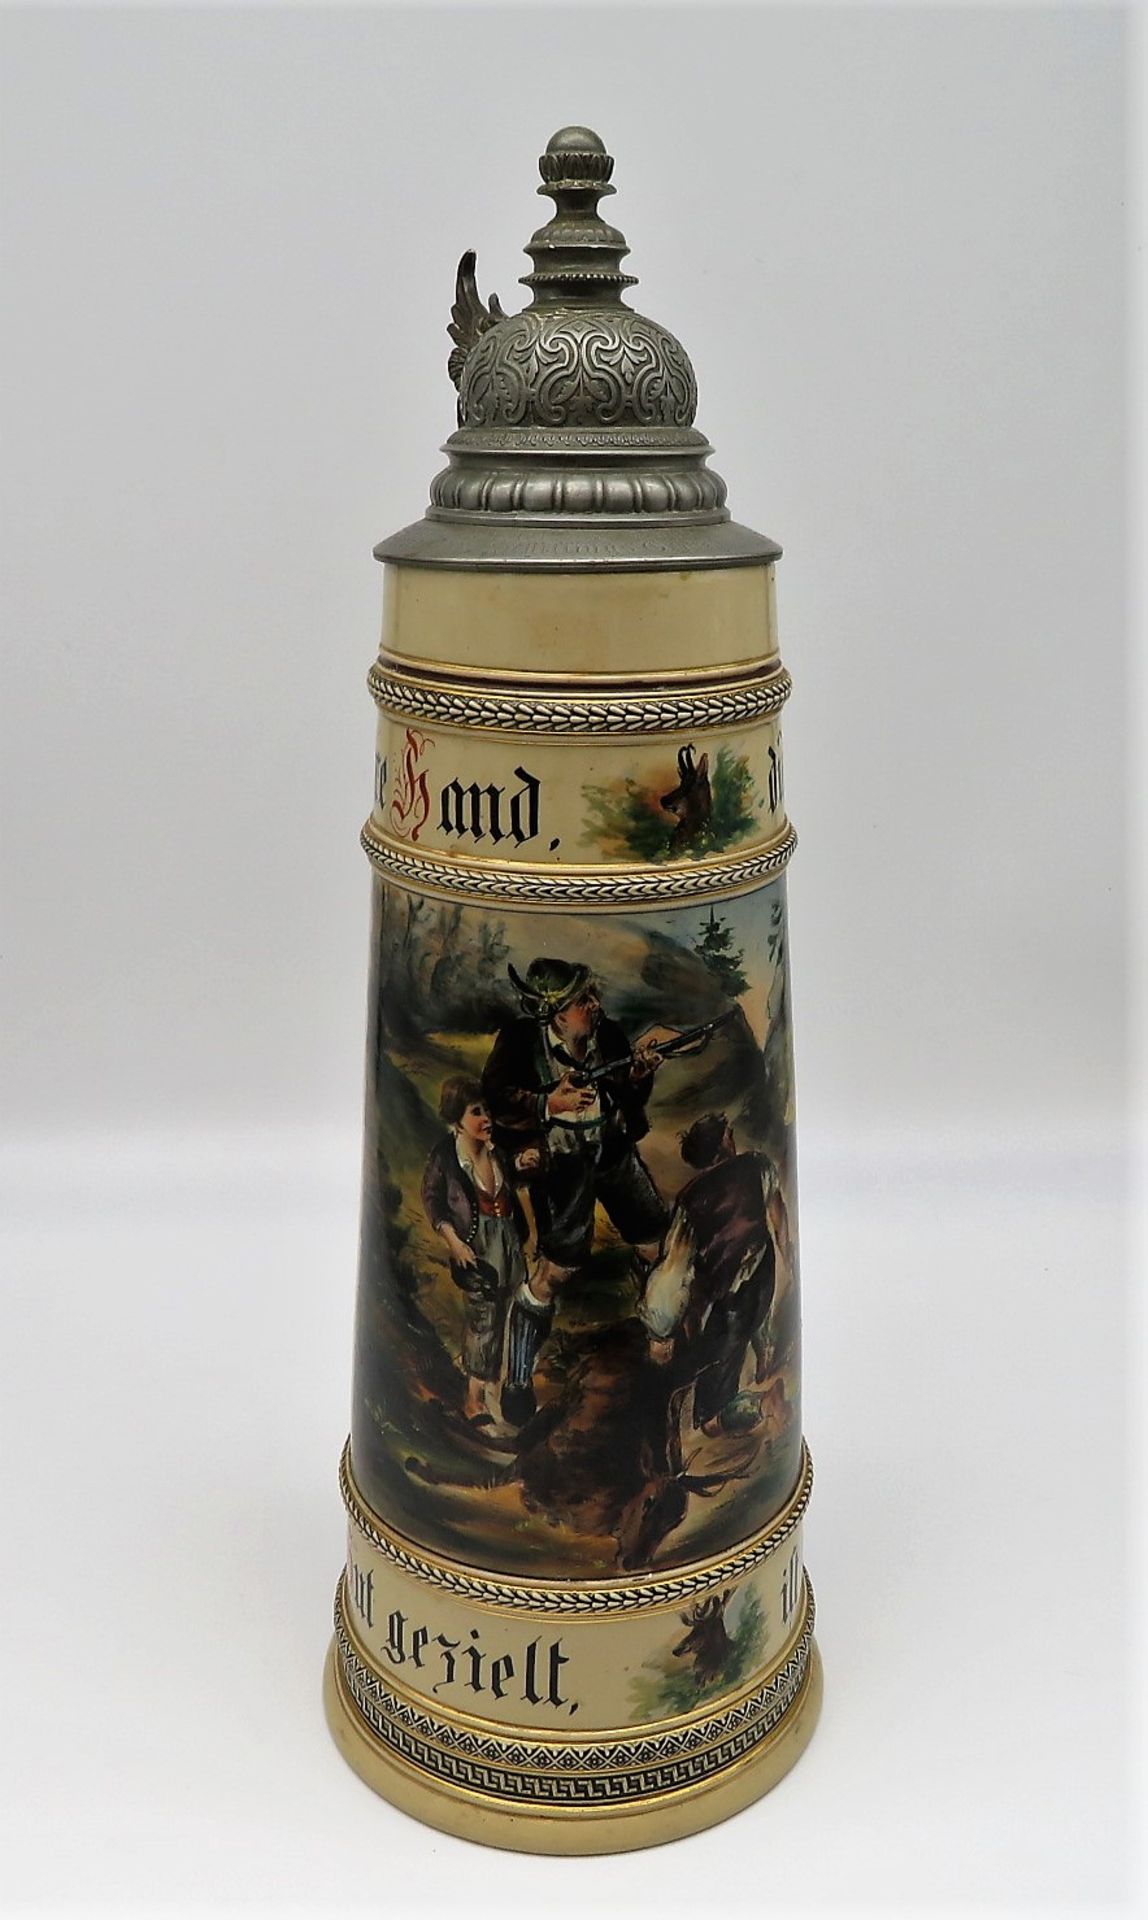 Großer Bierkrug, um 1900, Steingut mit polychromer Glasur von jagdlichem Dekor, Zinndeckel mit Widm - Bild 2 aus 4